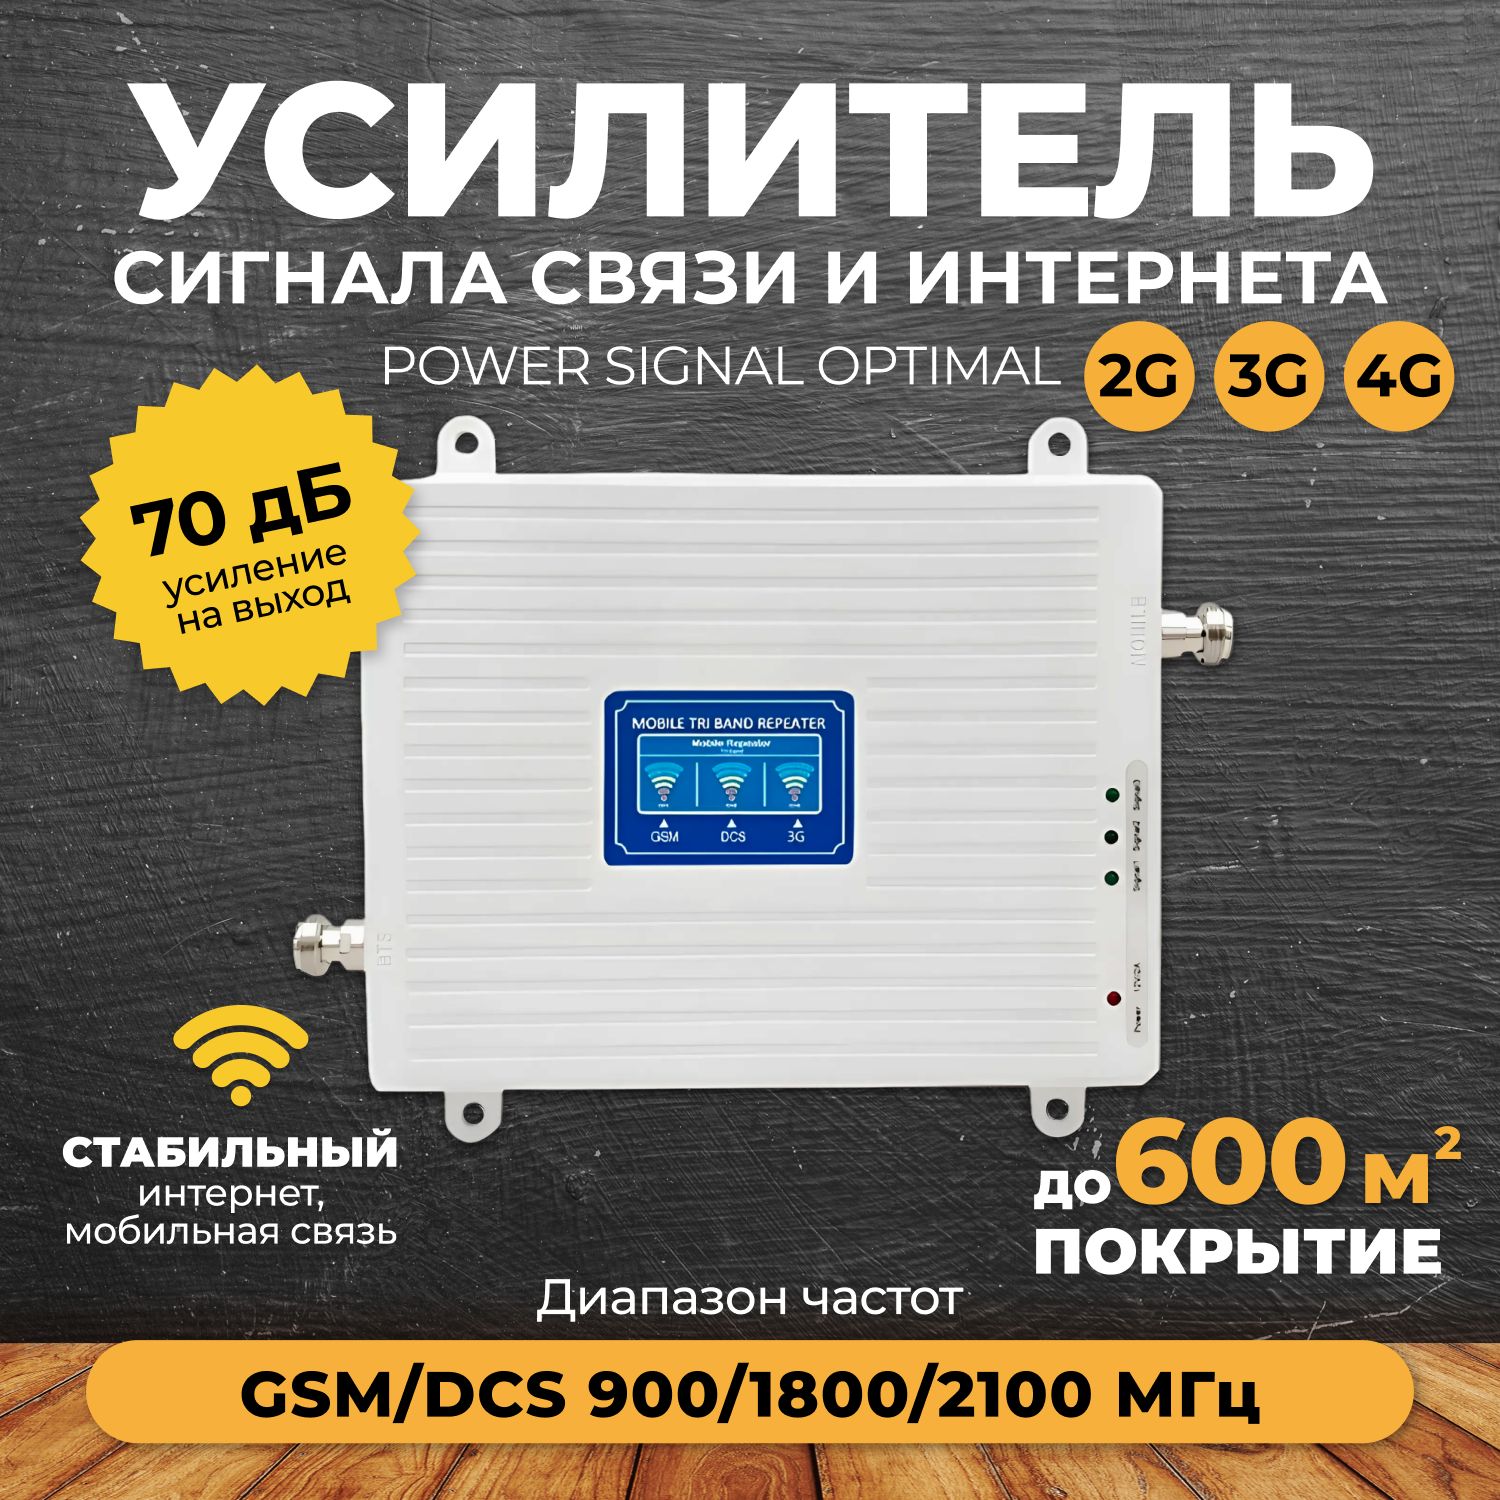 УсилительсигналасотовойсвязииинтернетаPowerSignalOptimal900/1800/2100MHz(для2G,3G,4G)70dBi,кабель15м.,комплект